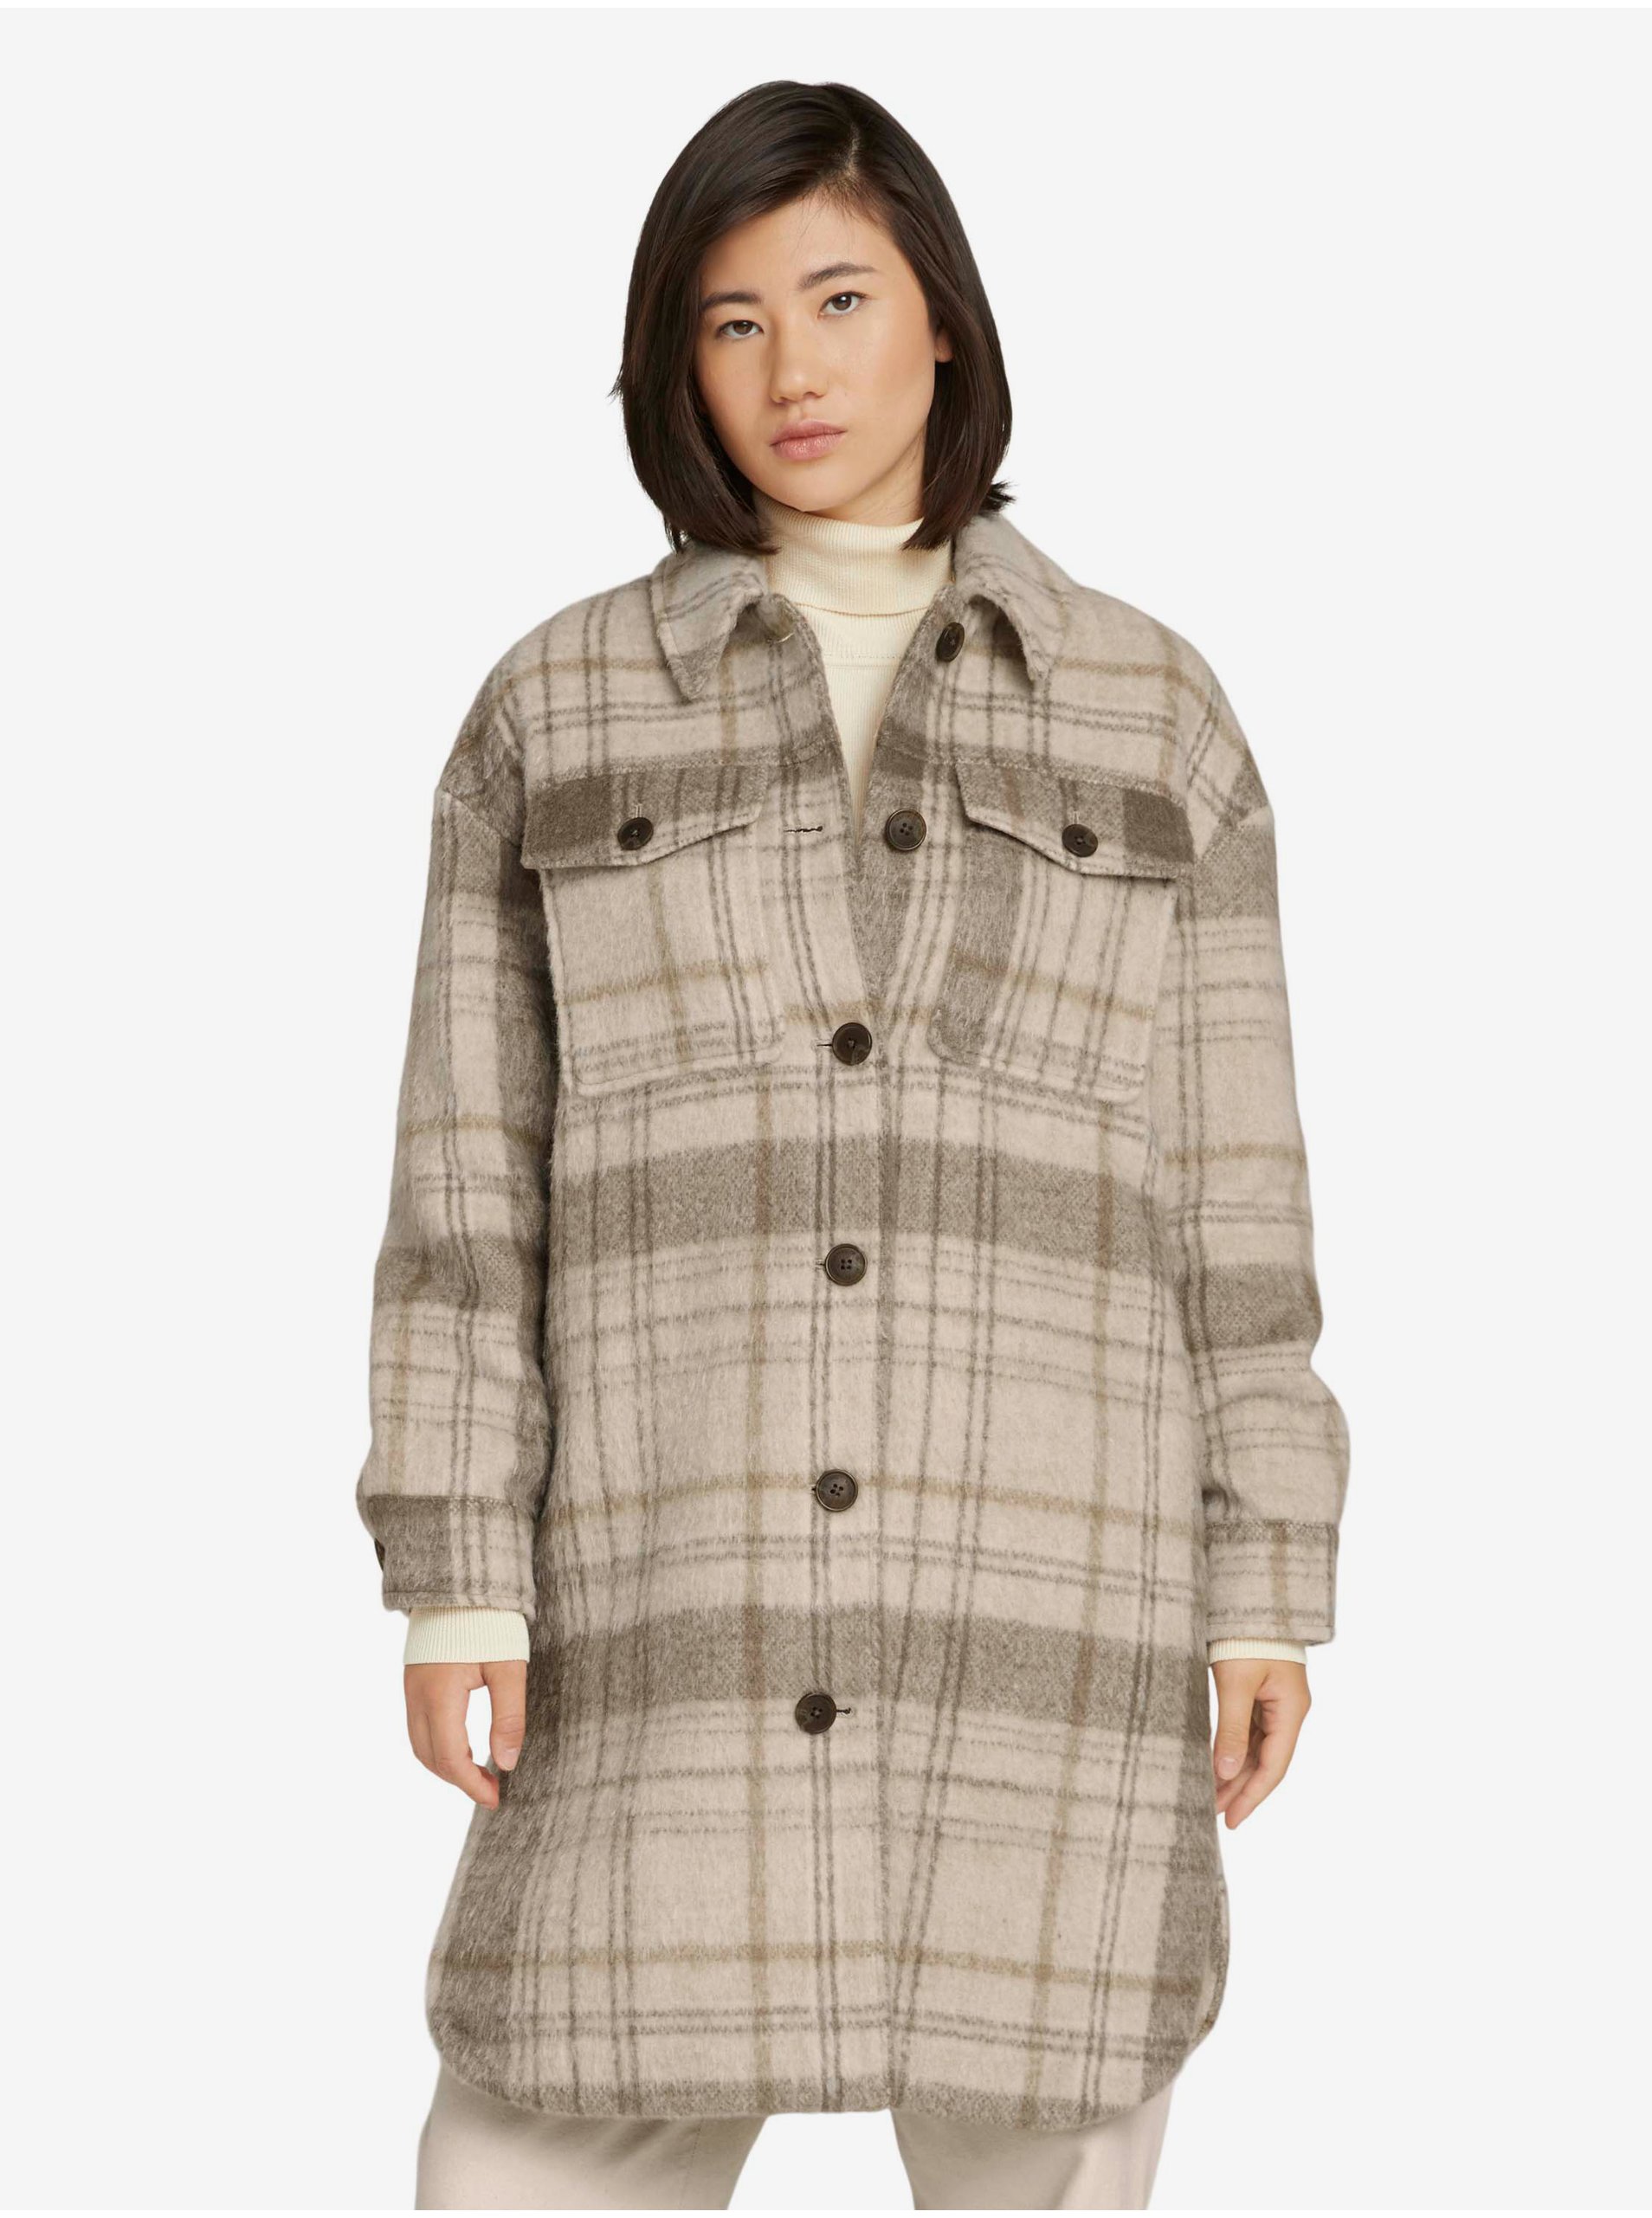 E-shop Hnedo-béžový dámsky kockovaný košeľový kabát Tom Tailor Plaid